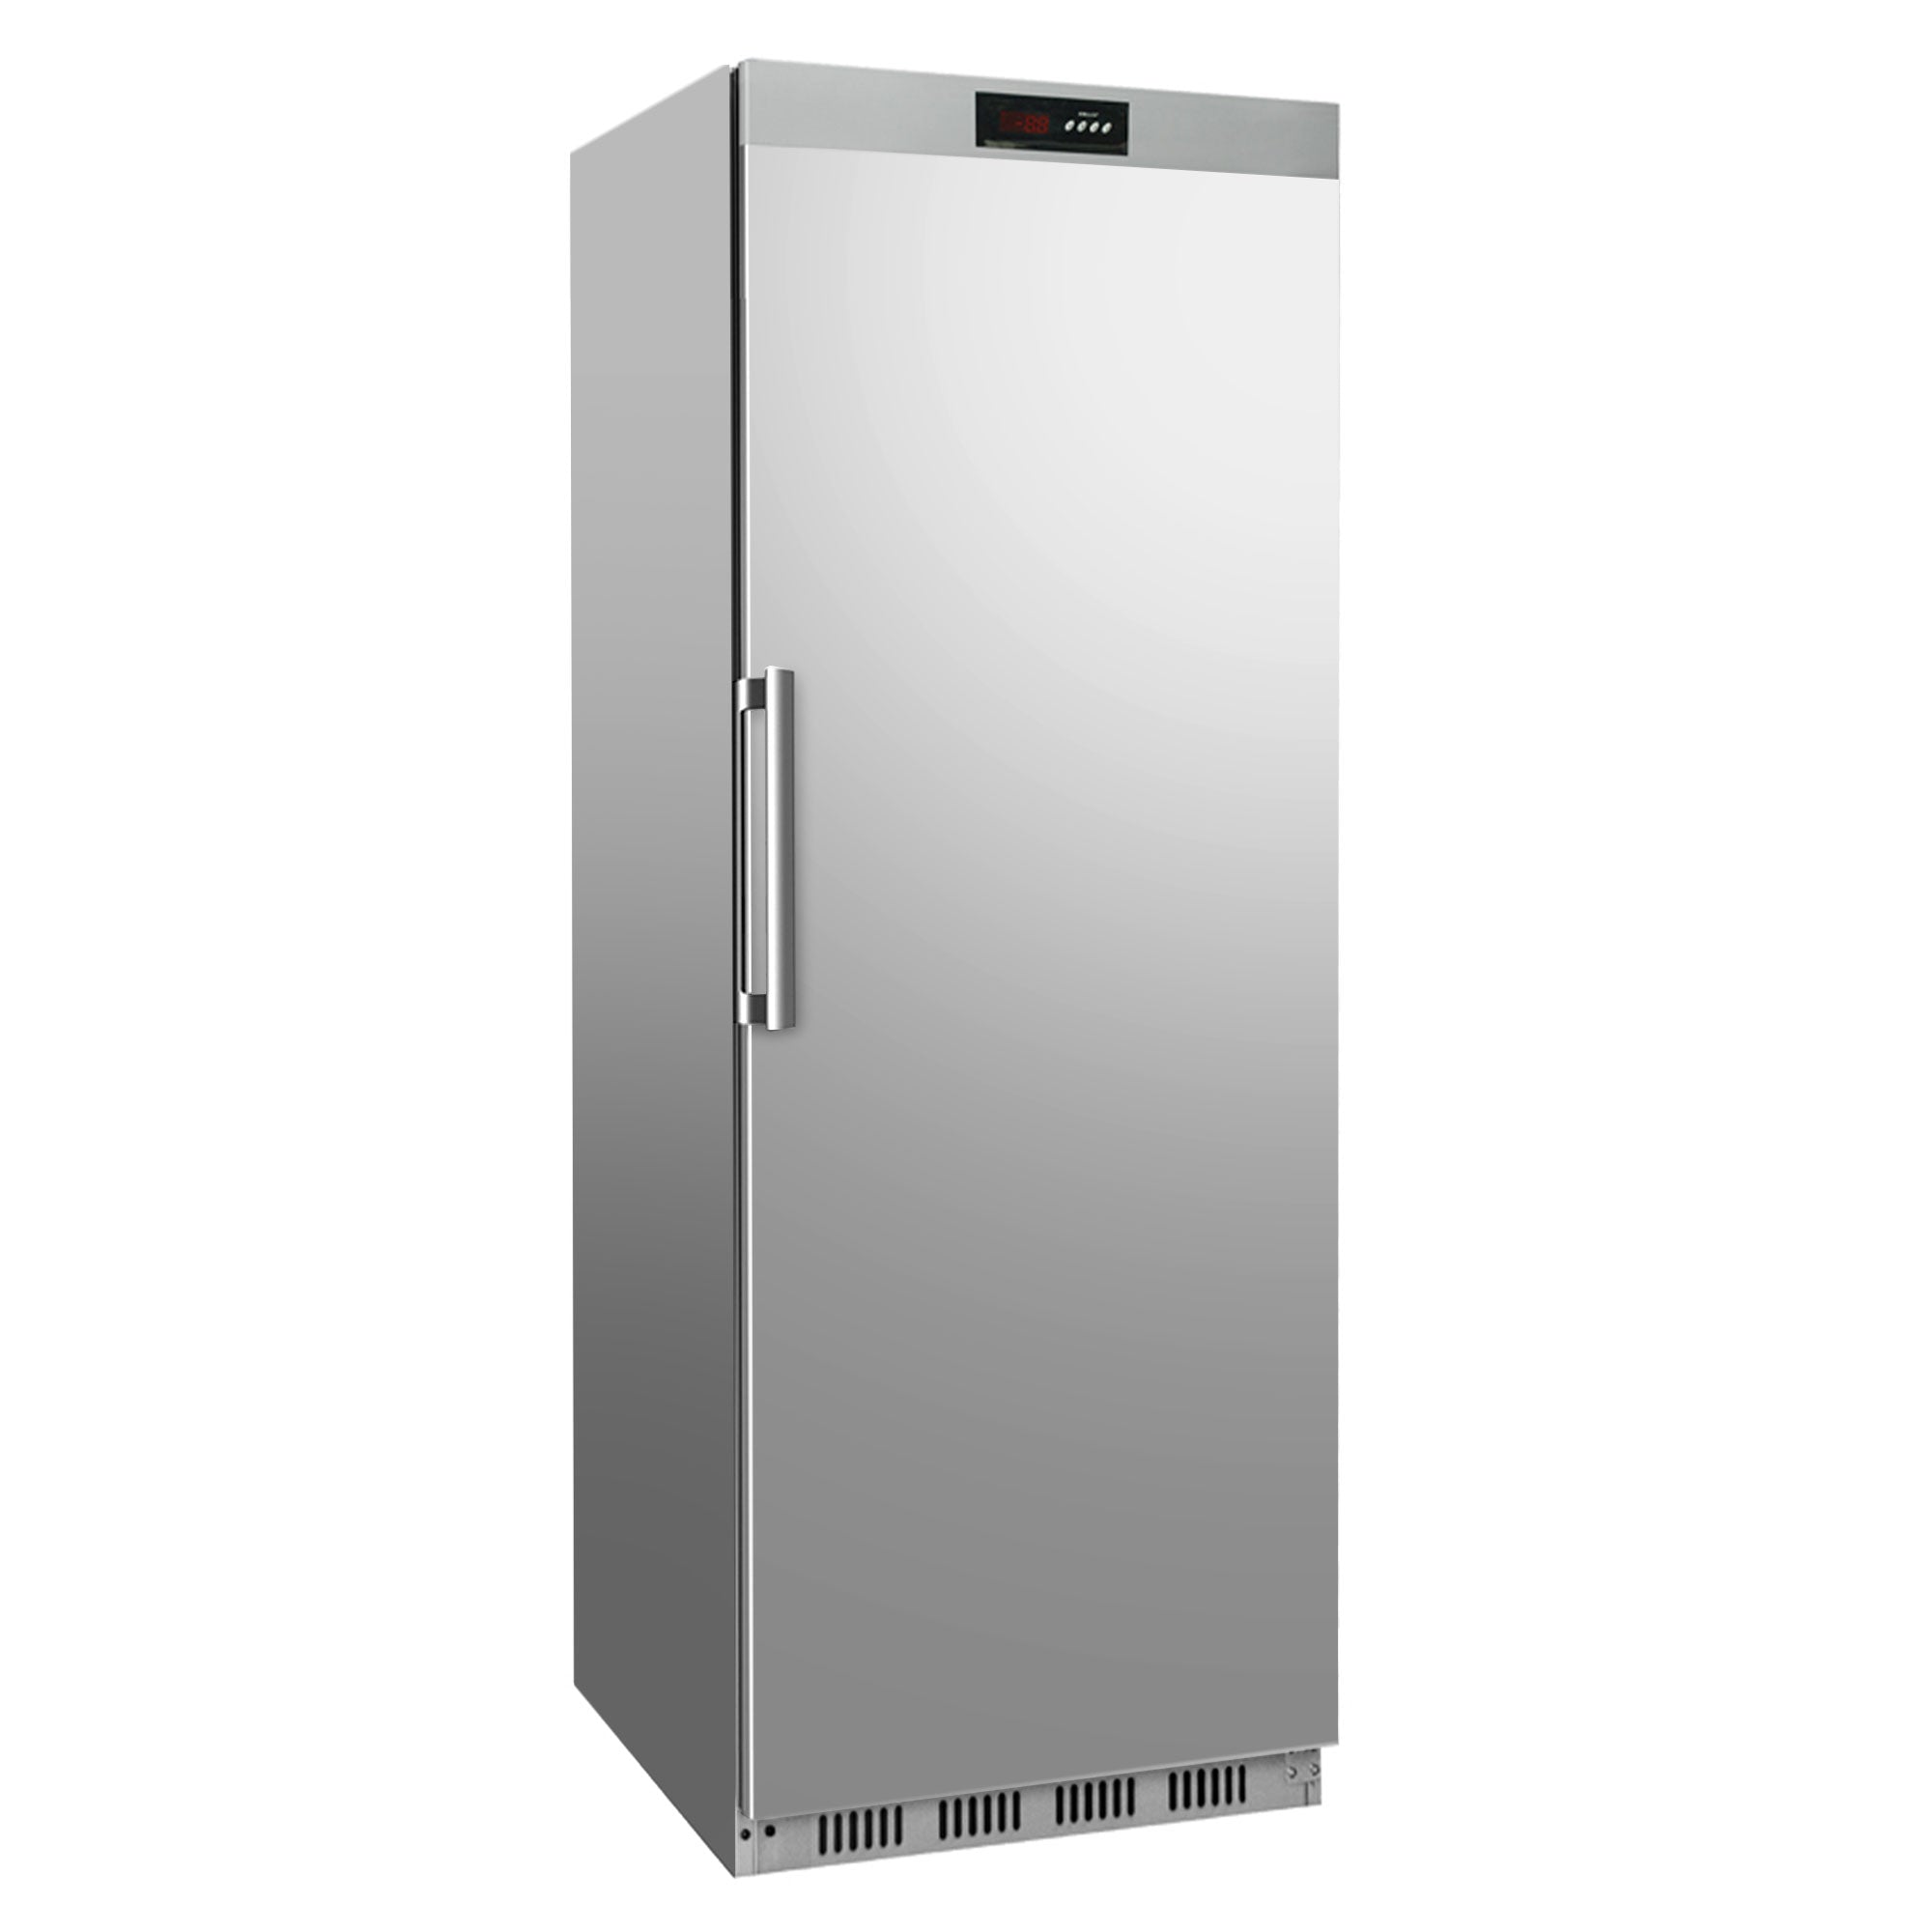 Stainless steel refrigerator - 400 liters - with 1 door